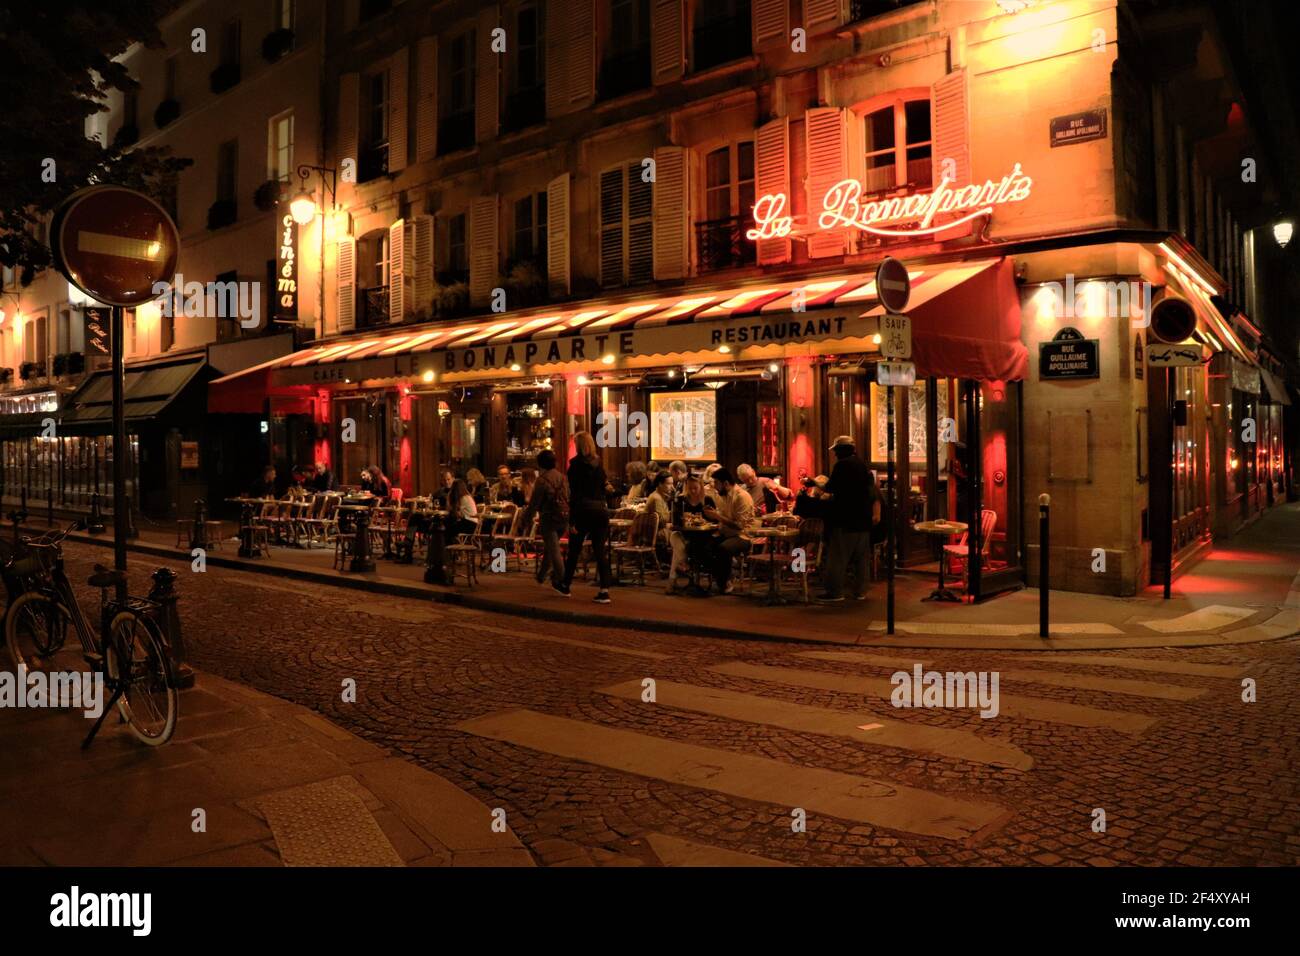 Late night dinner scene in Paris, France Stock Photo